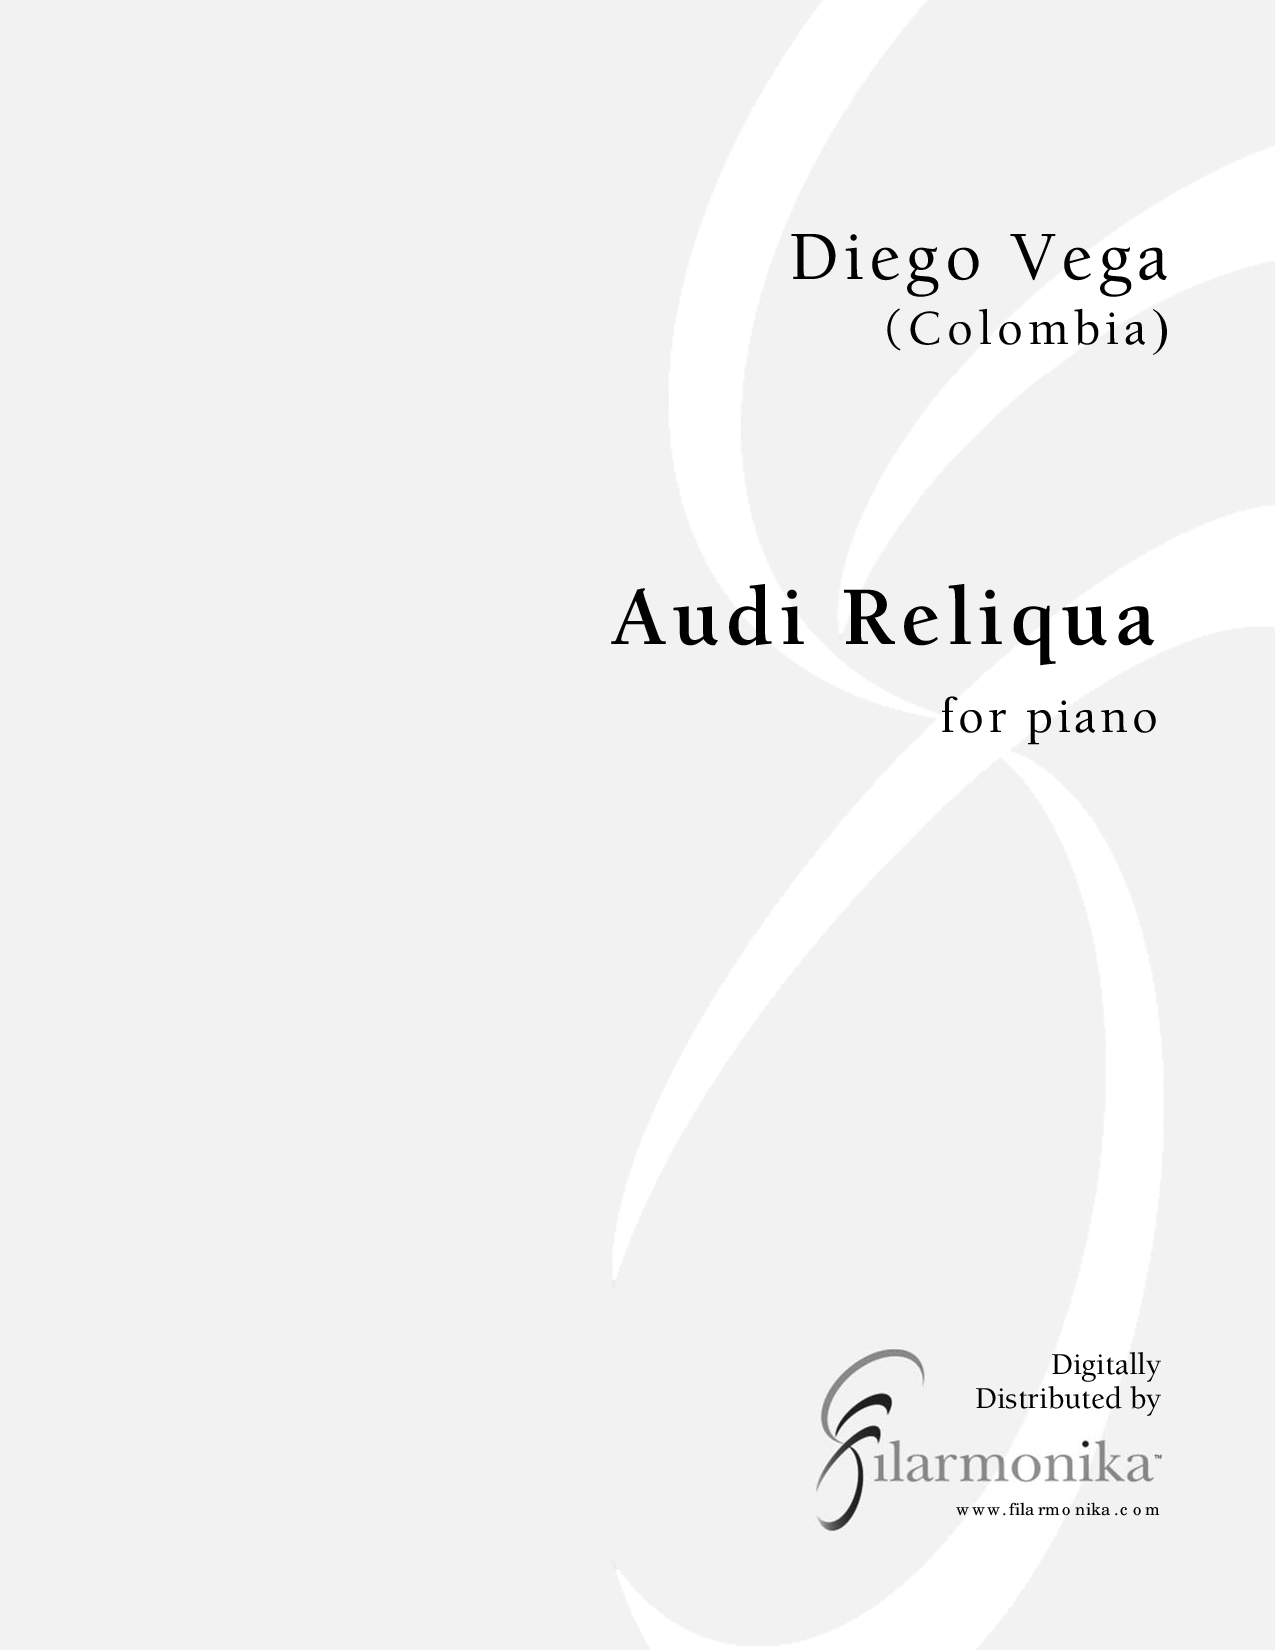 Audi Reliqua, for solo piano